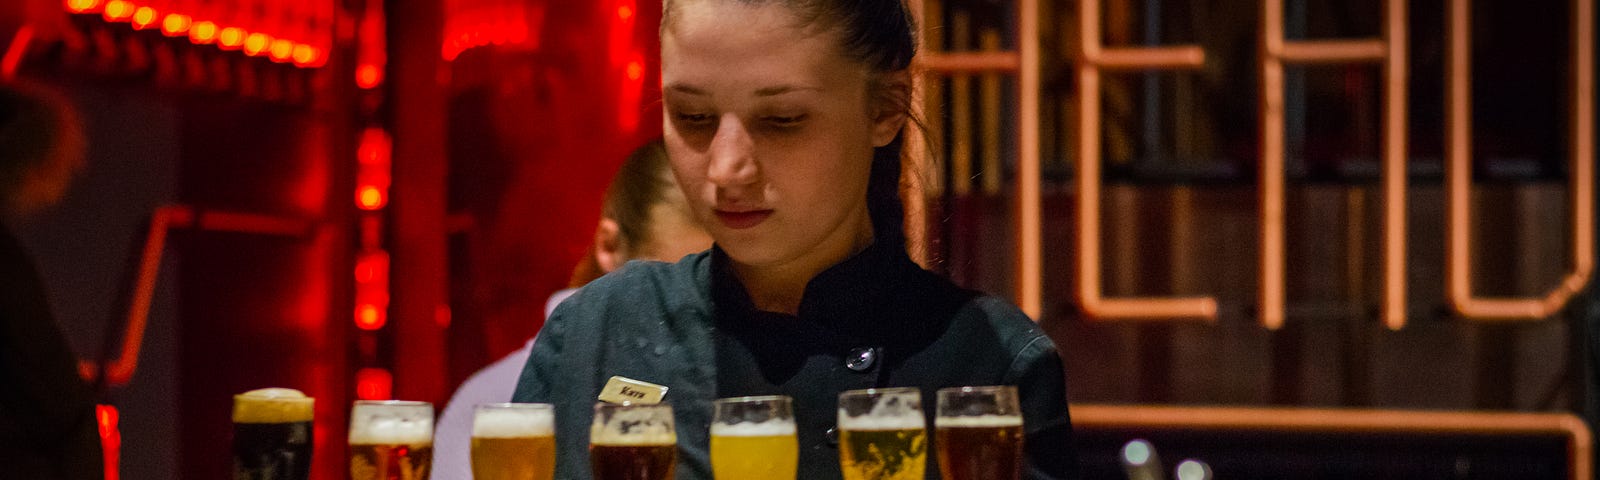 Bartender lining up glasses of beer